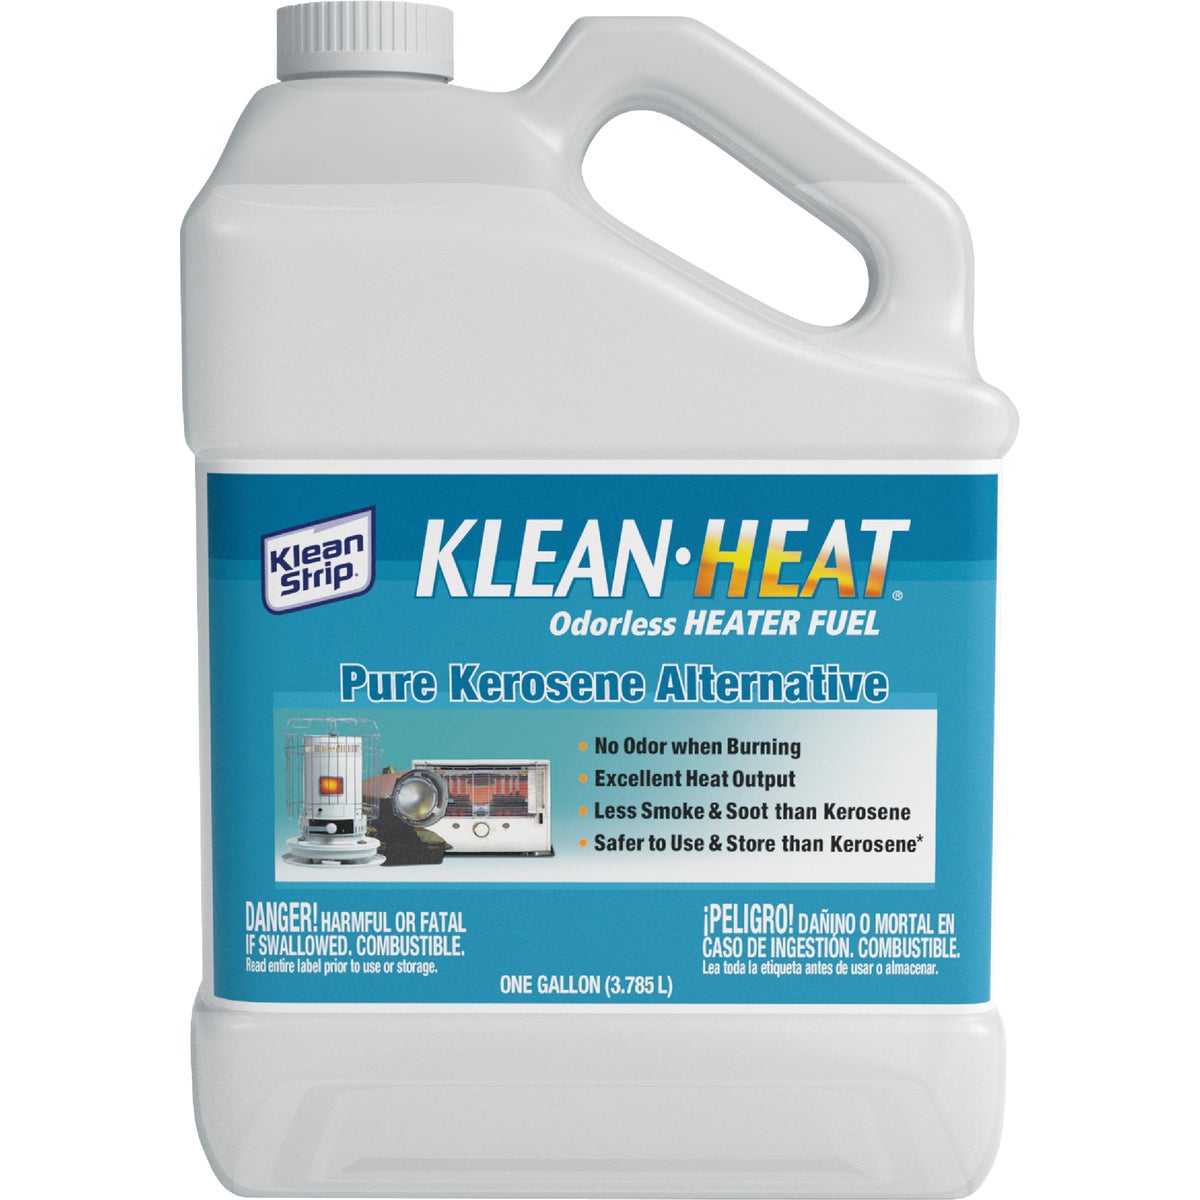 Item 484628, Klean-Strip Klean-Heat odorless heater fuel.